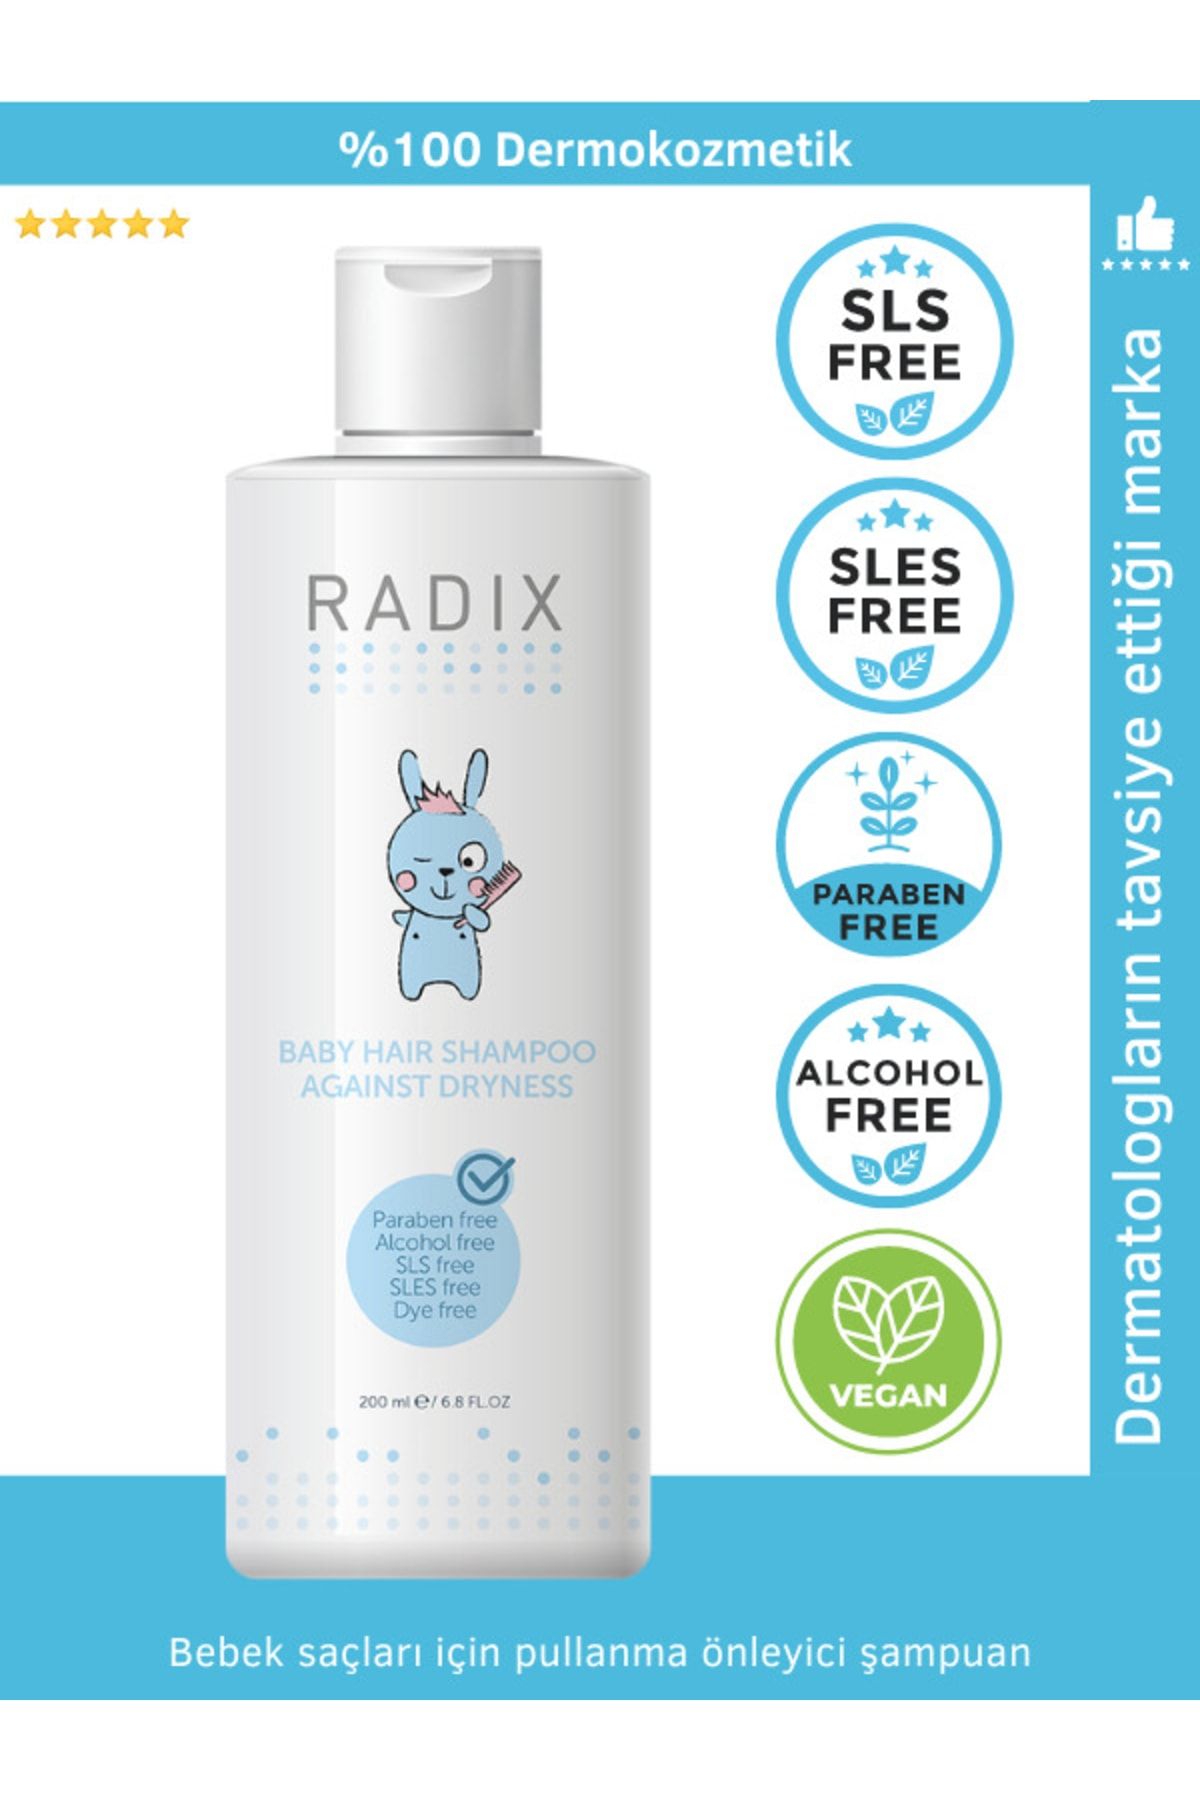 Radix Bebekler Için Pullanma Önleyici Şampuan - 200 ml